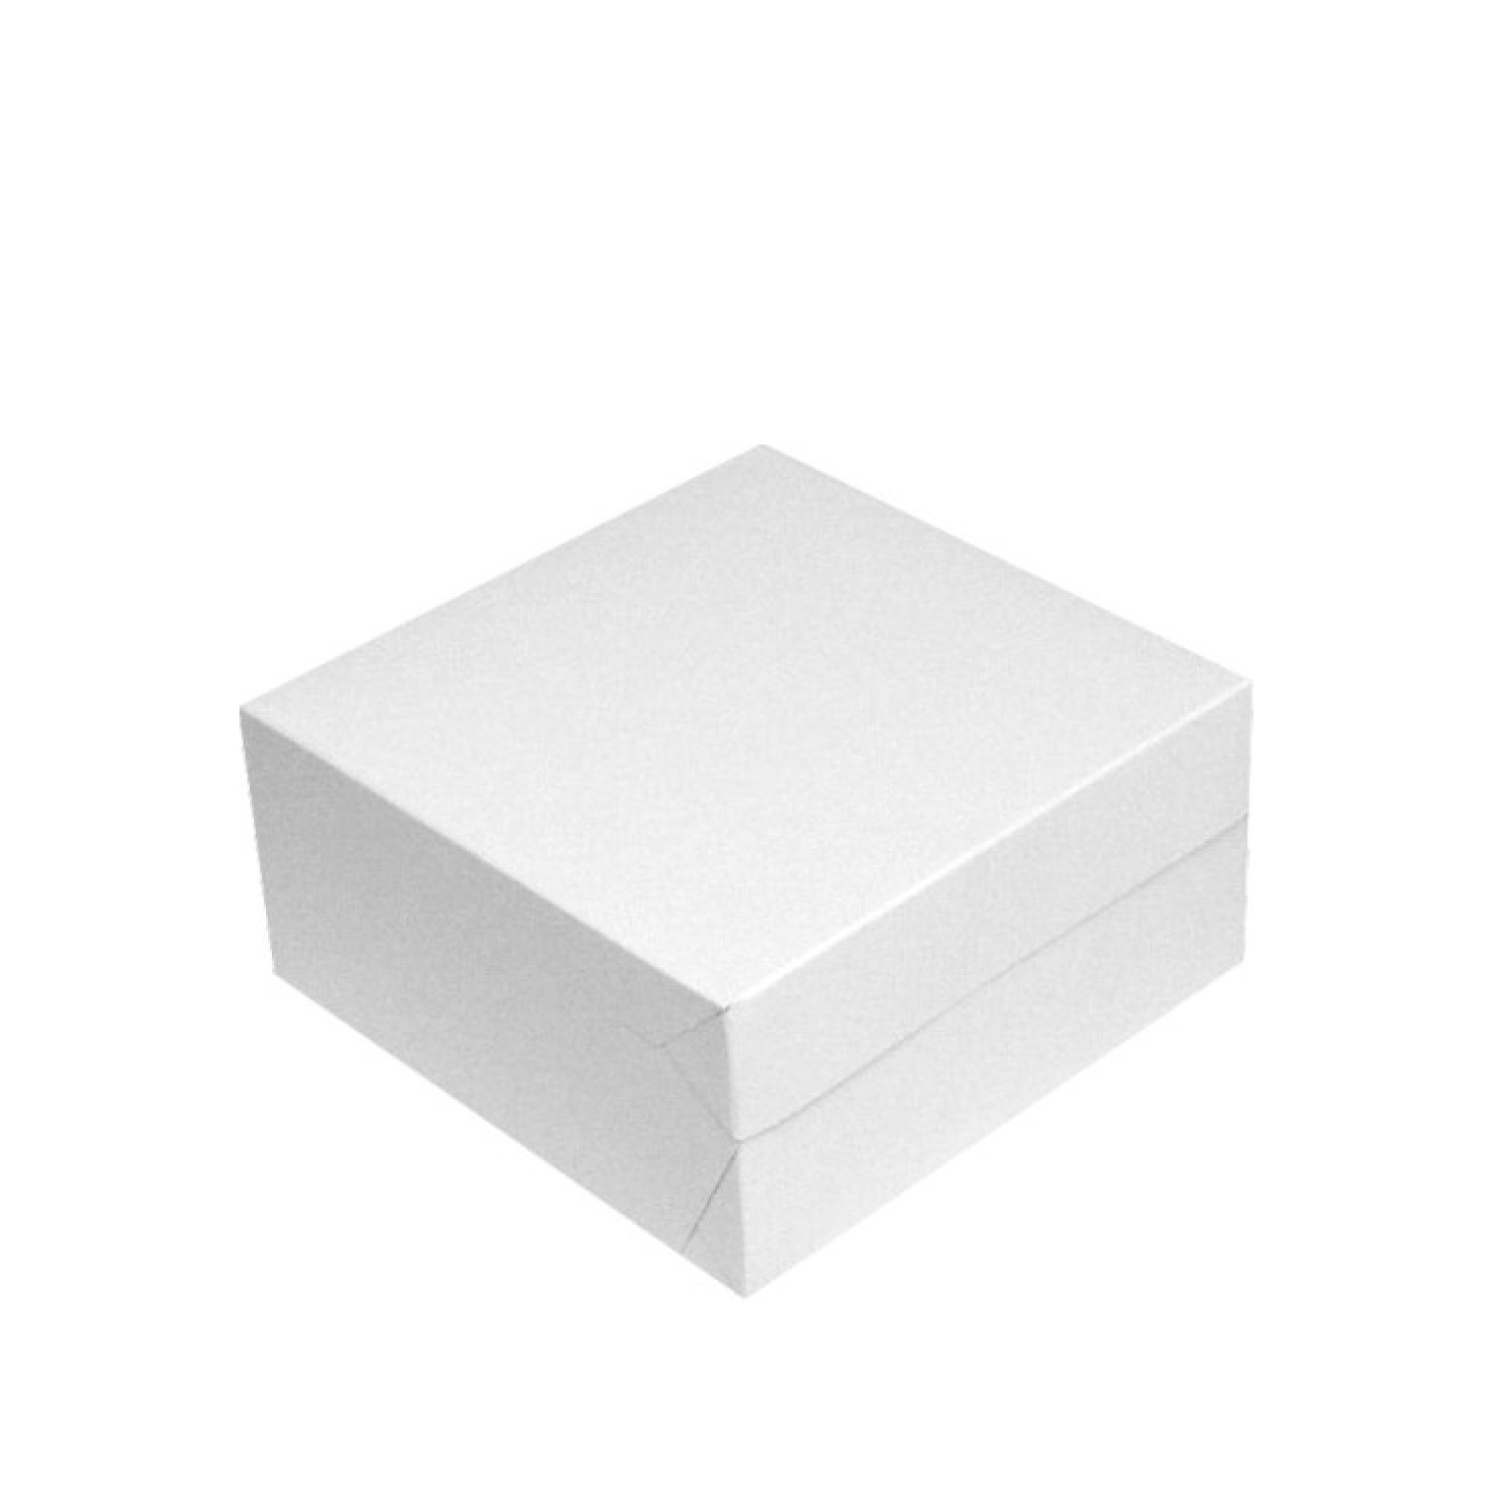 50 Stück Tortenkartons 18x18x9cm weiß